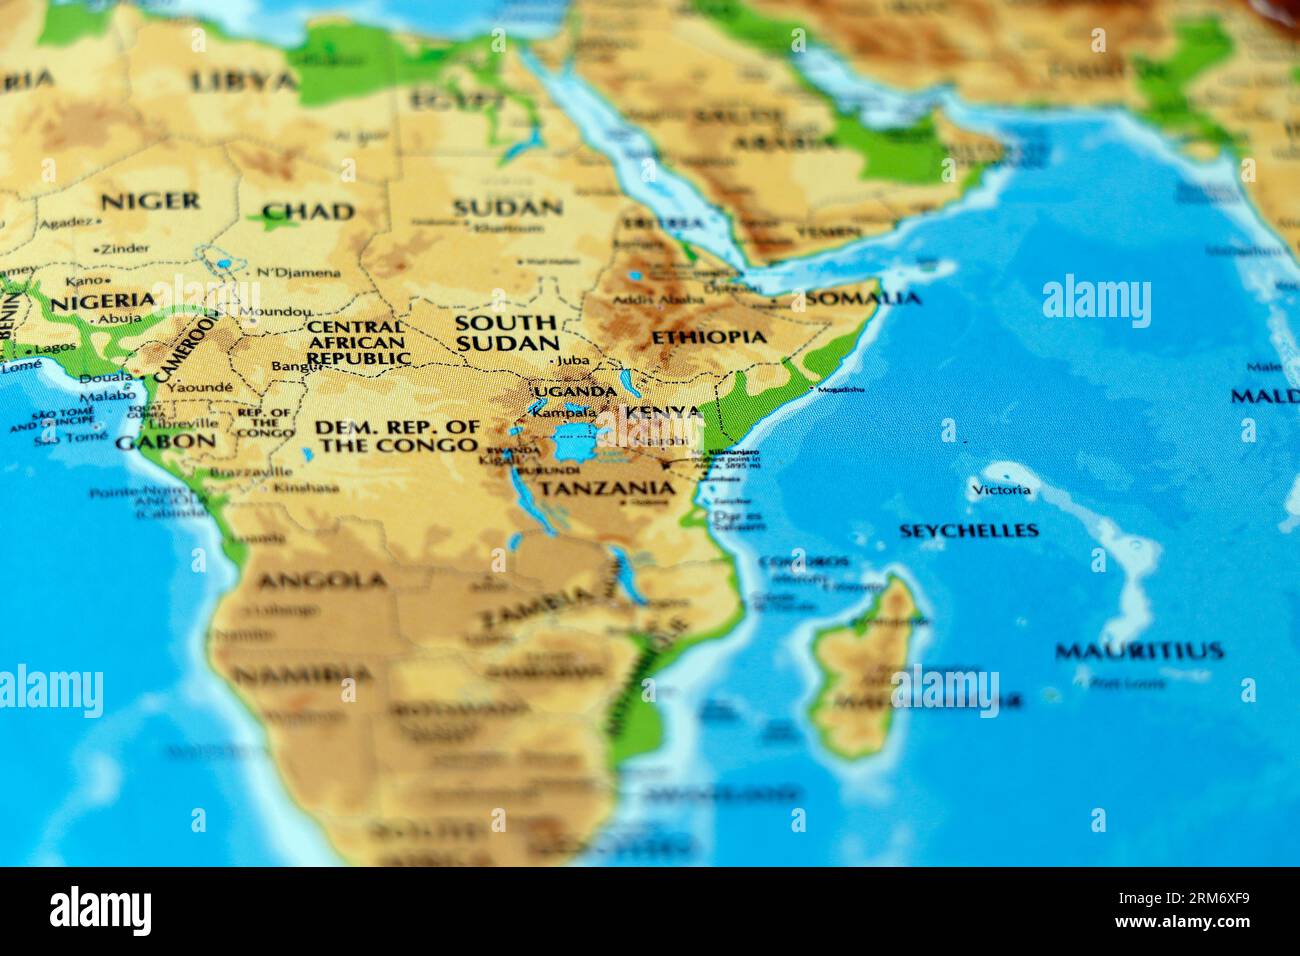 mappa mondiale del continente africano, sudan, ciad, niger, kenya, camerun, etiopia, paesi in forte evidenza Foto Stock